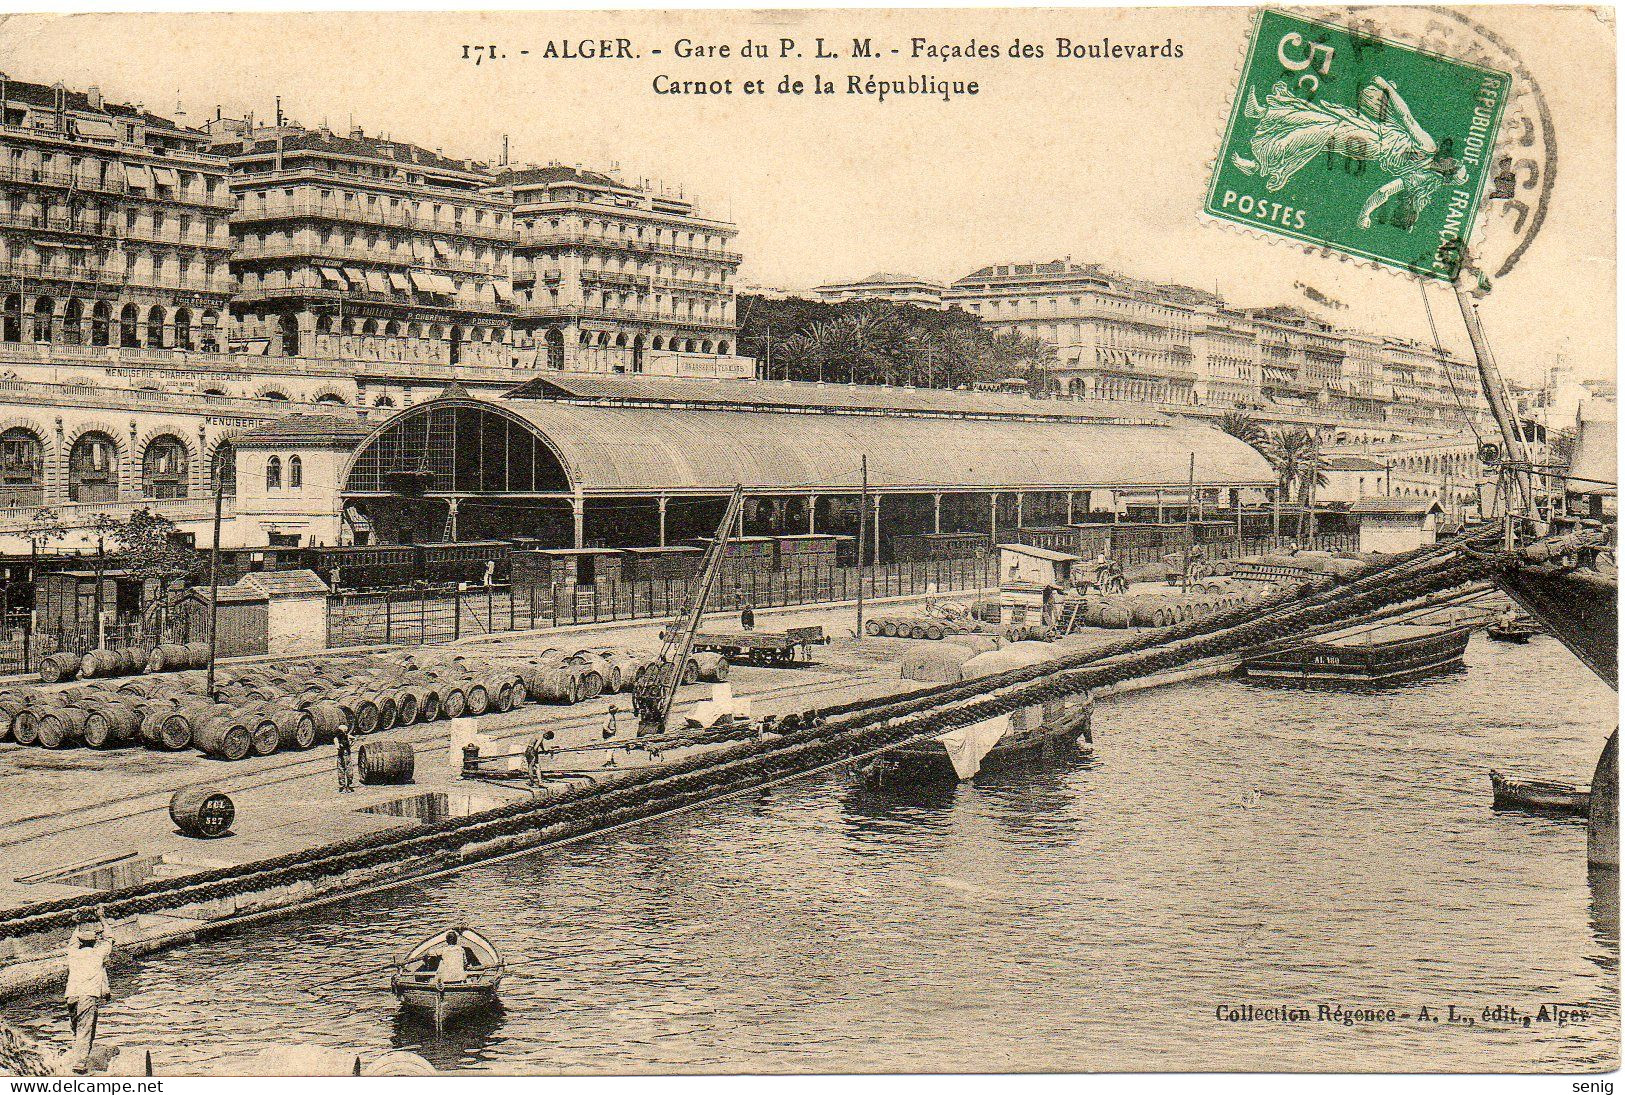 ALGERIE - ALGER - 171 - Gare PLM Façades Carnot République - Collection Régence A. L. édit. Alger (Leroux) - - Algerien